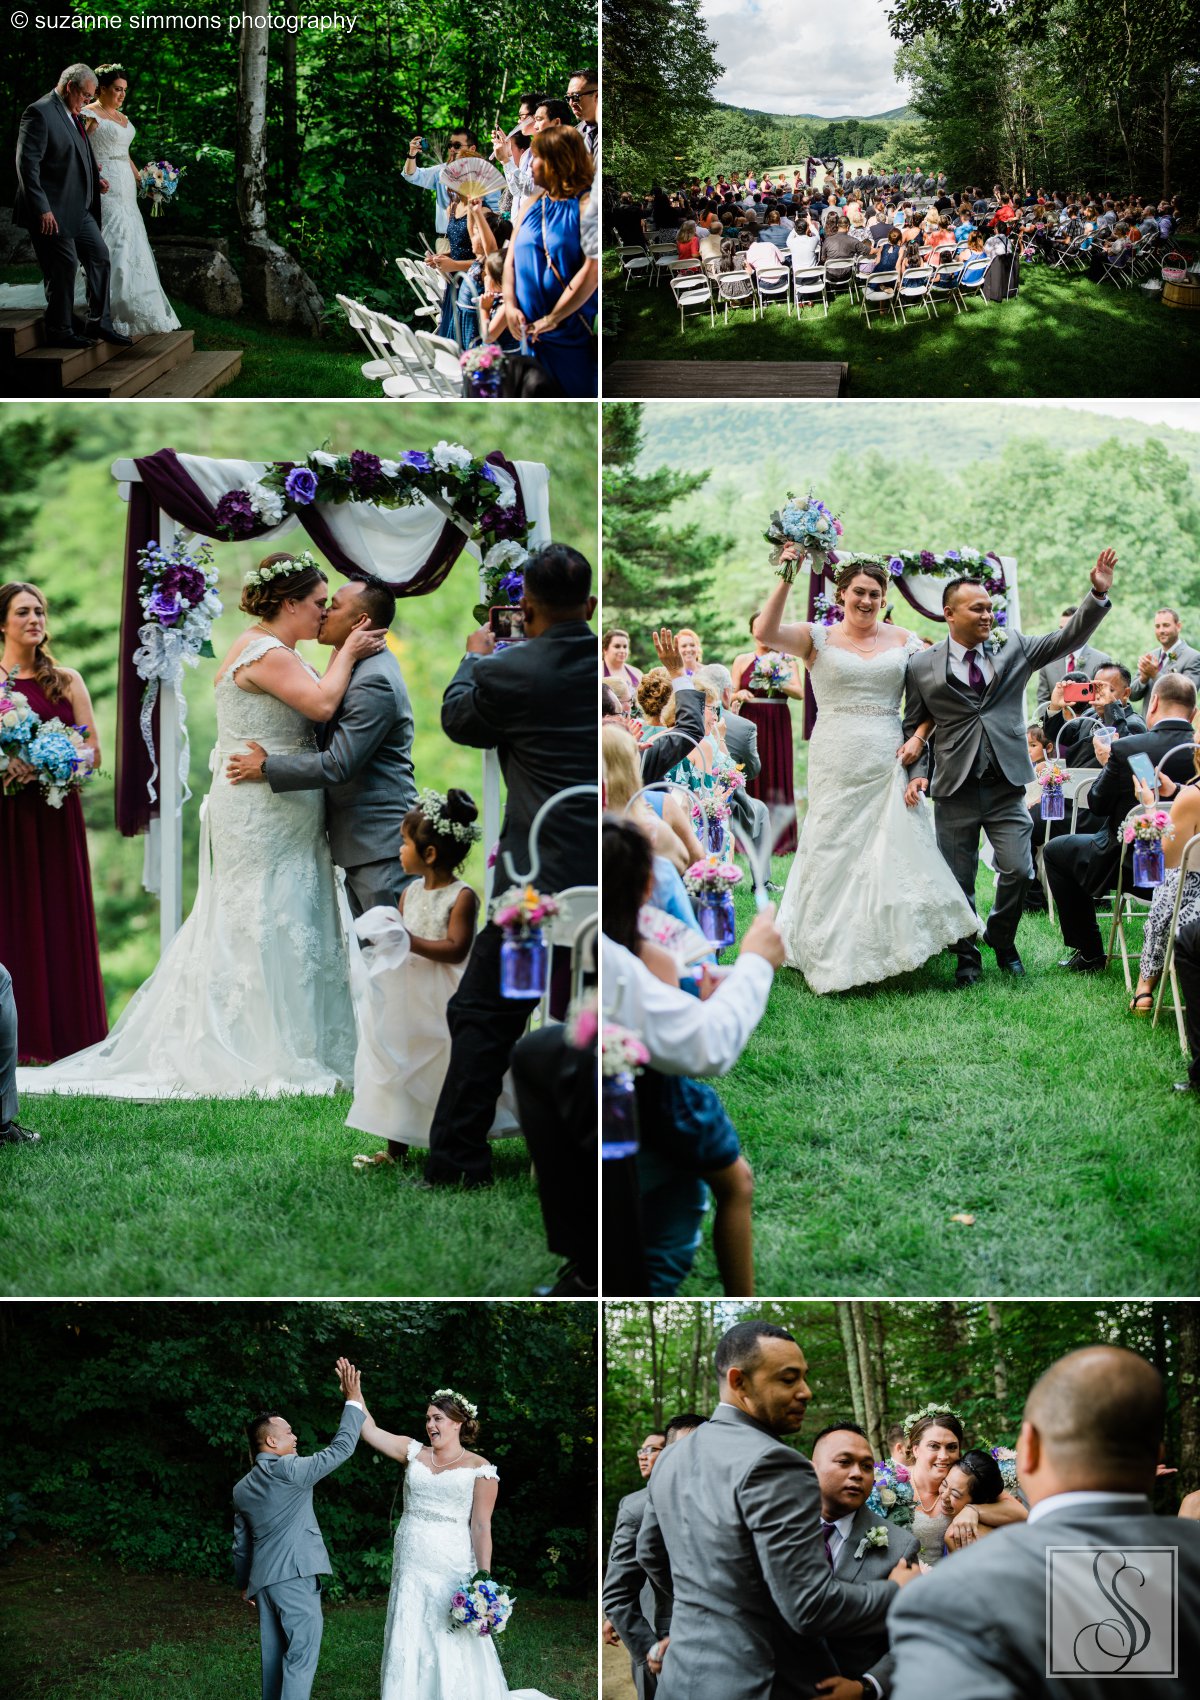 Wedding ceremony in Jackson, New Hampshire